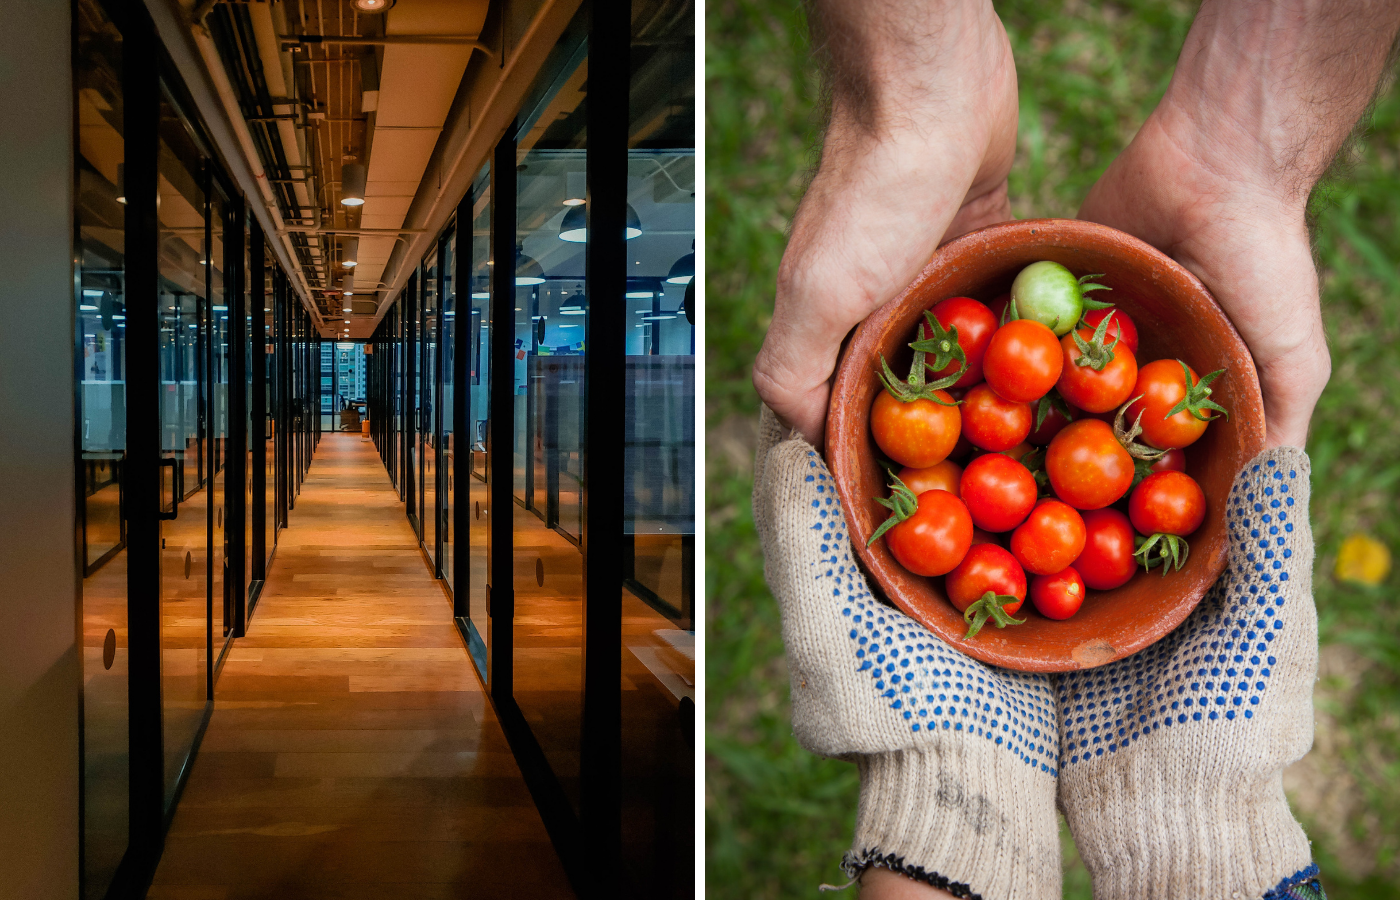 kaksi kuvaa vierekkäin: vasemmalla kuva lasiseinäisestä toimiston käytävästä. Oikeassa kuvassa kaksi kättä ojentaa tomaattikulhoa toiselle ihmiselle.